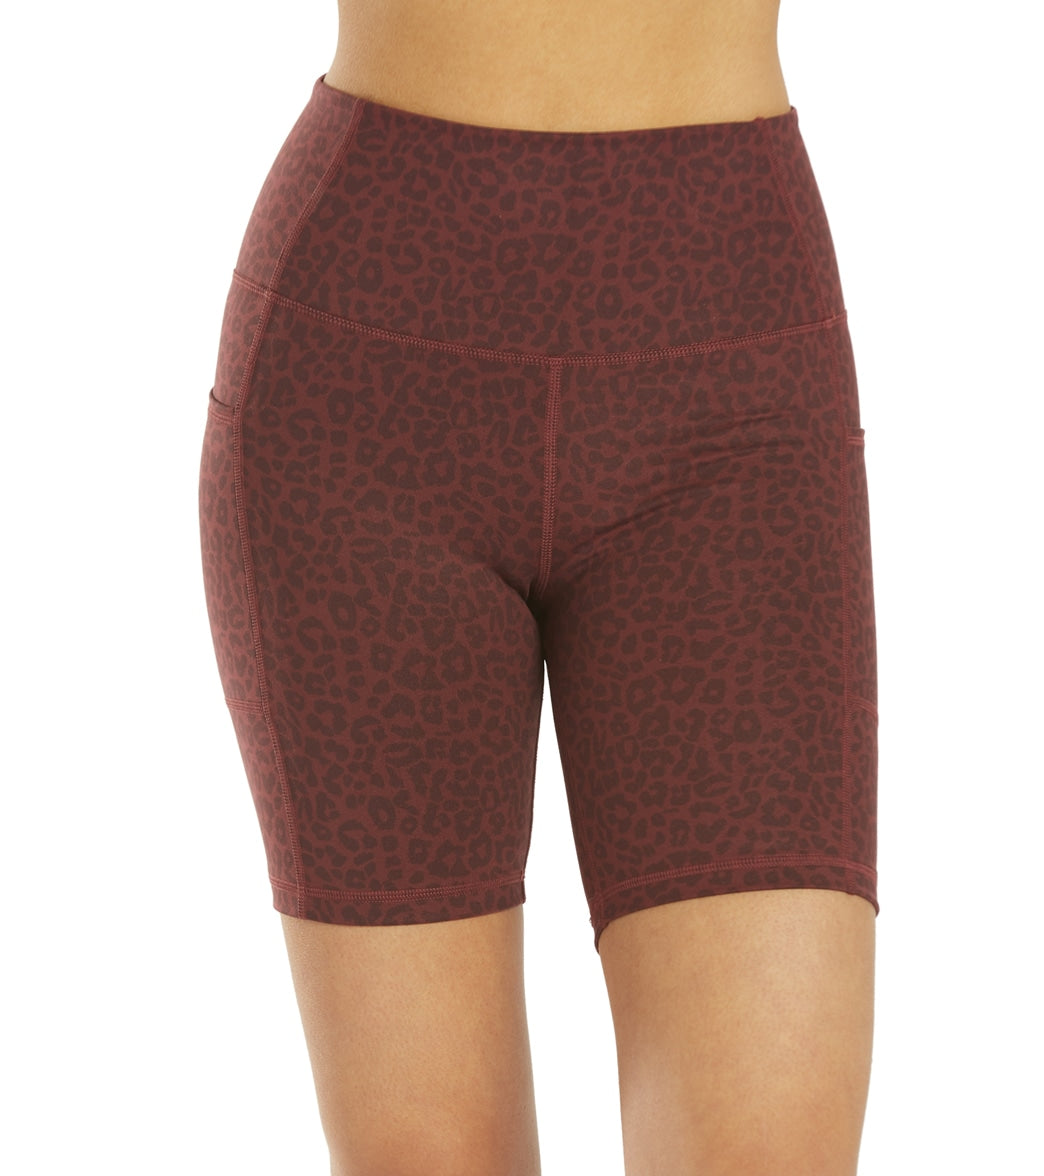 Everyday Yoga Uphold Cheetah High Waisted Hot Yoga shorts 1